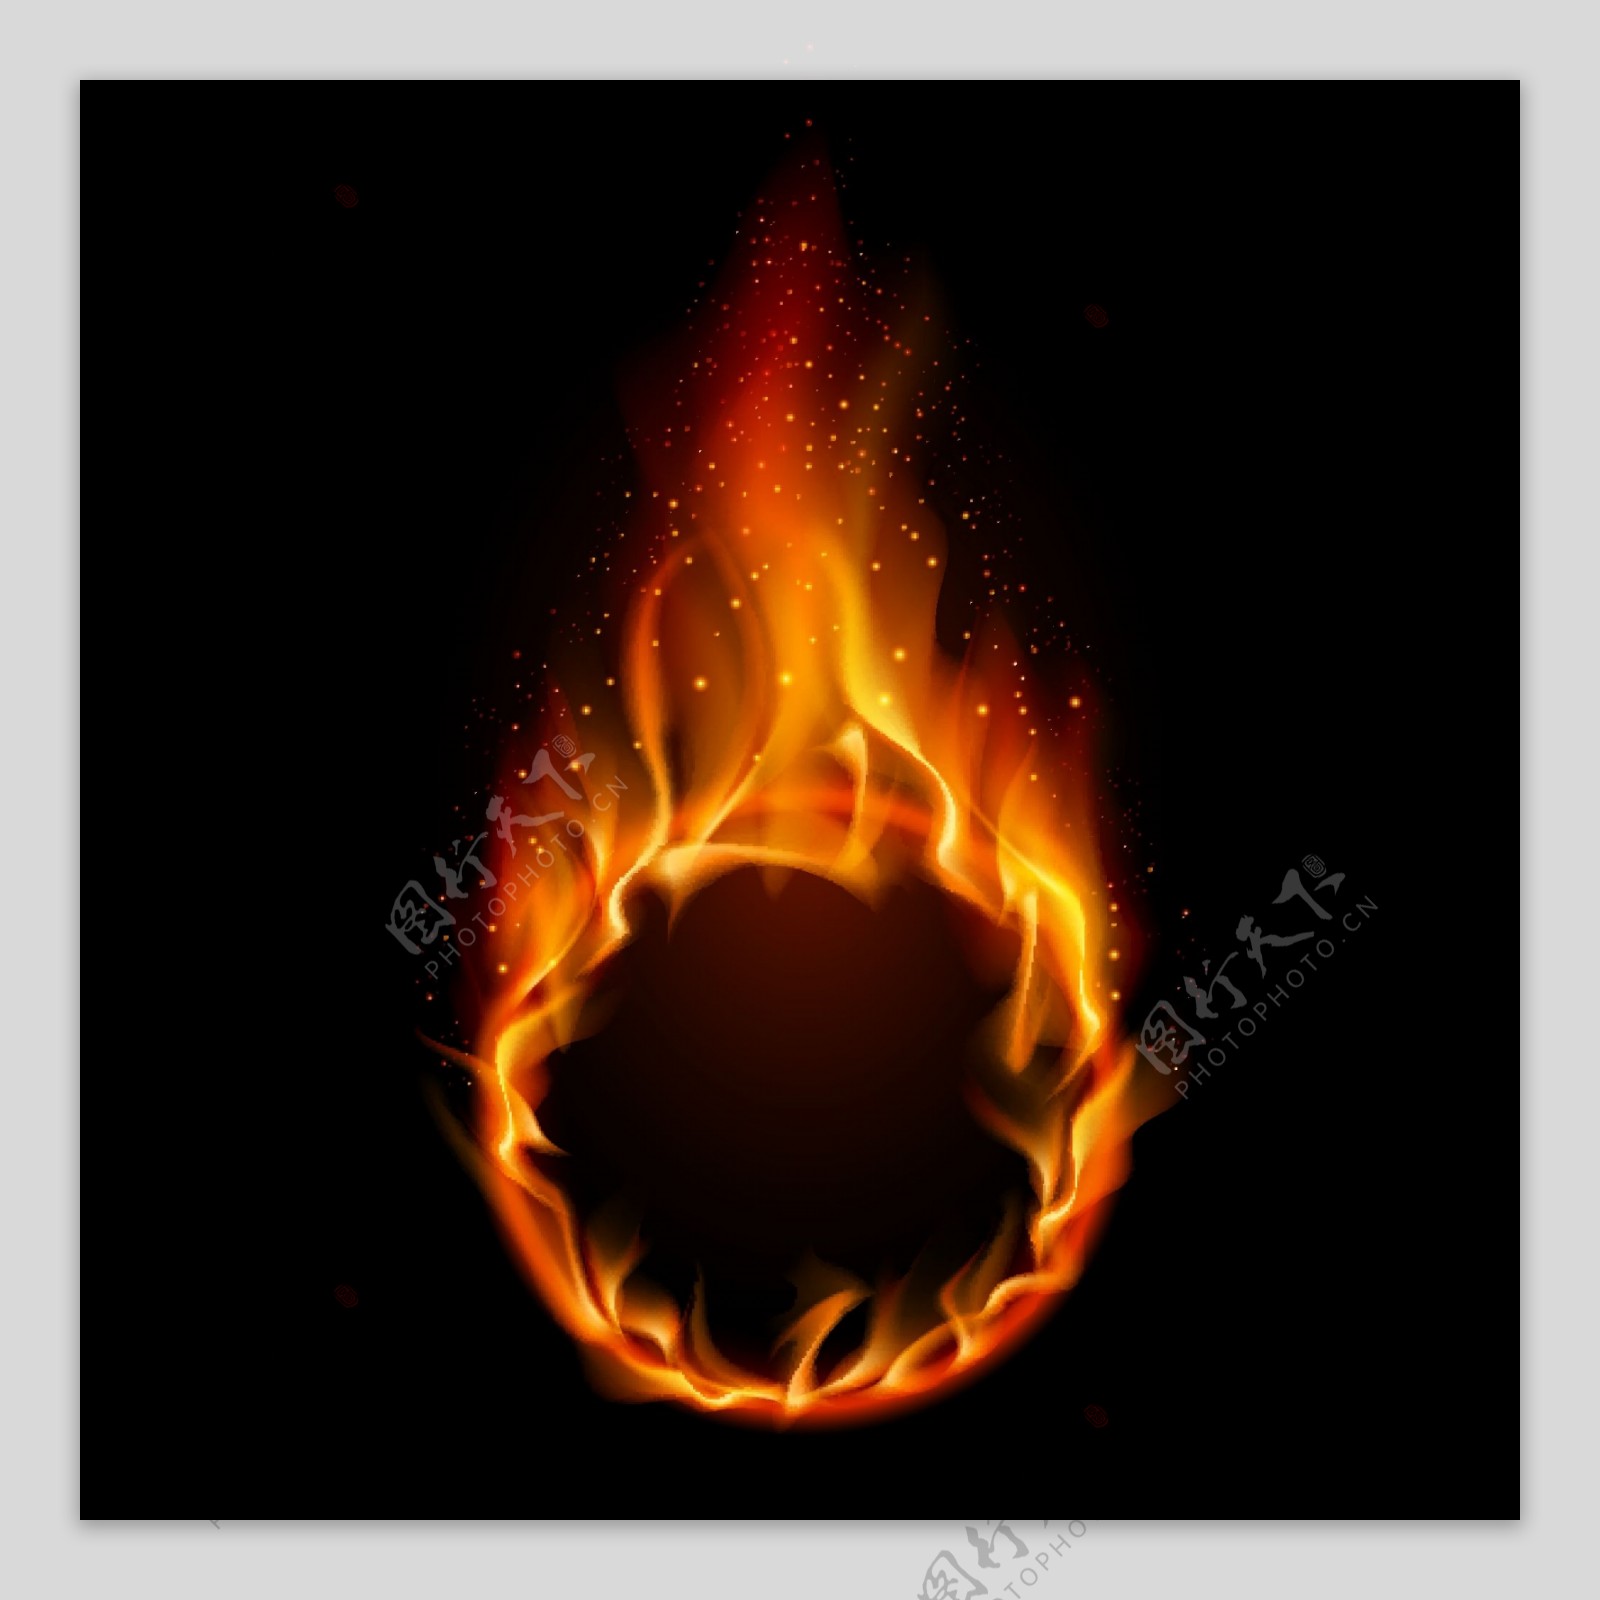 动感燃烧的火焰火圈图片